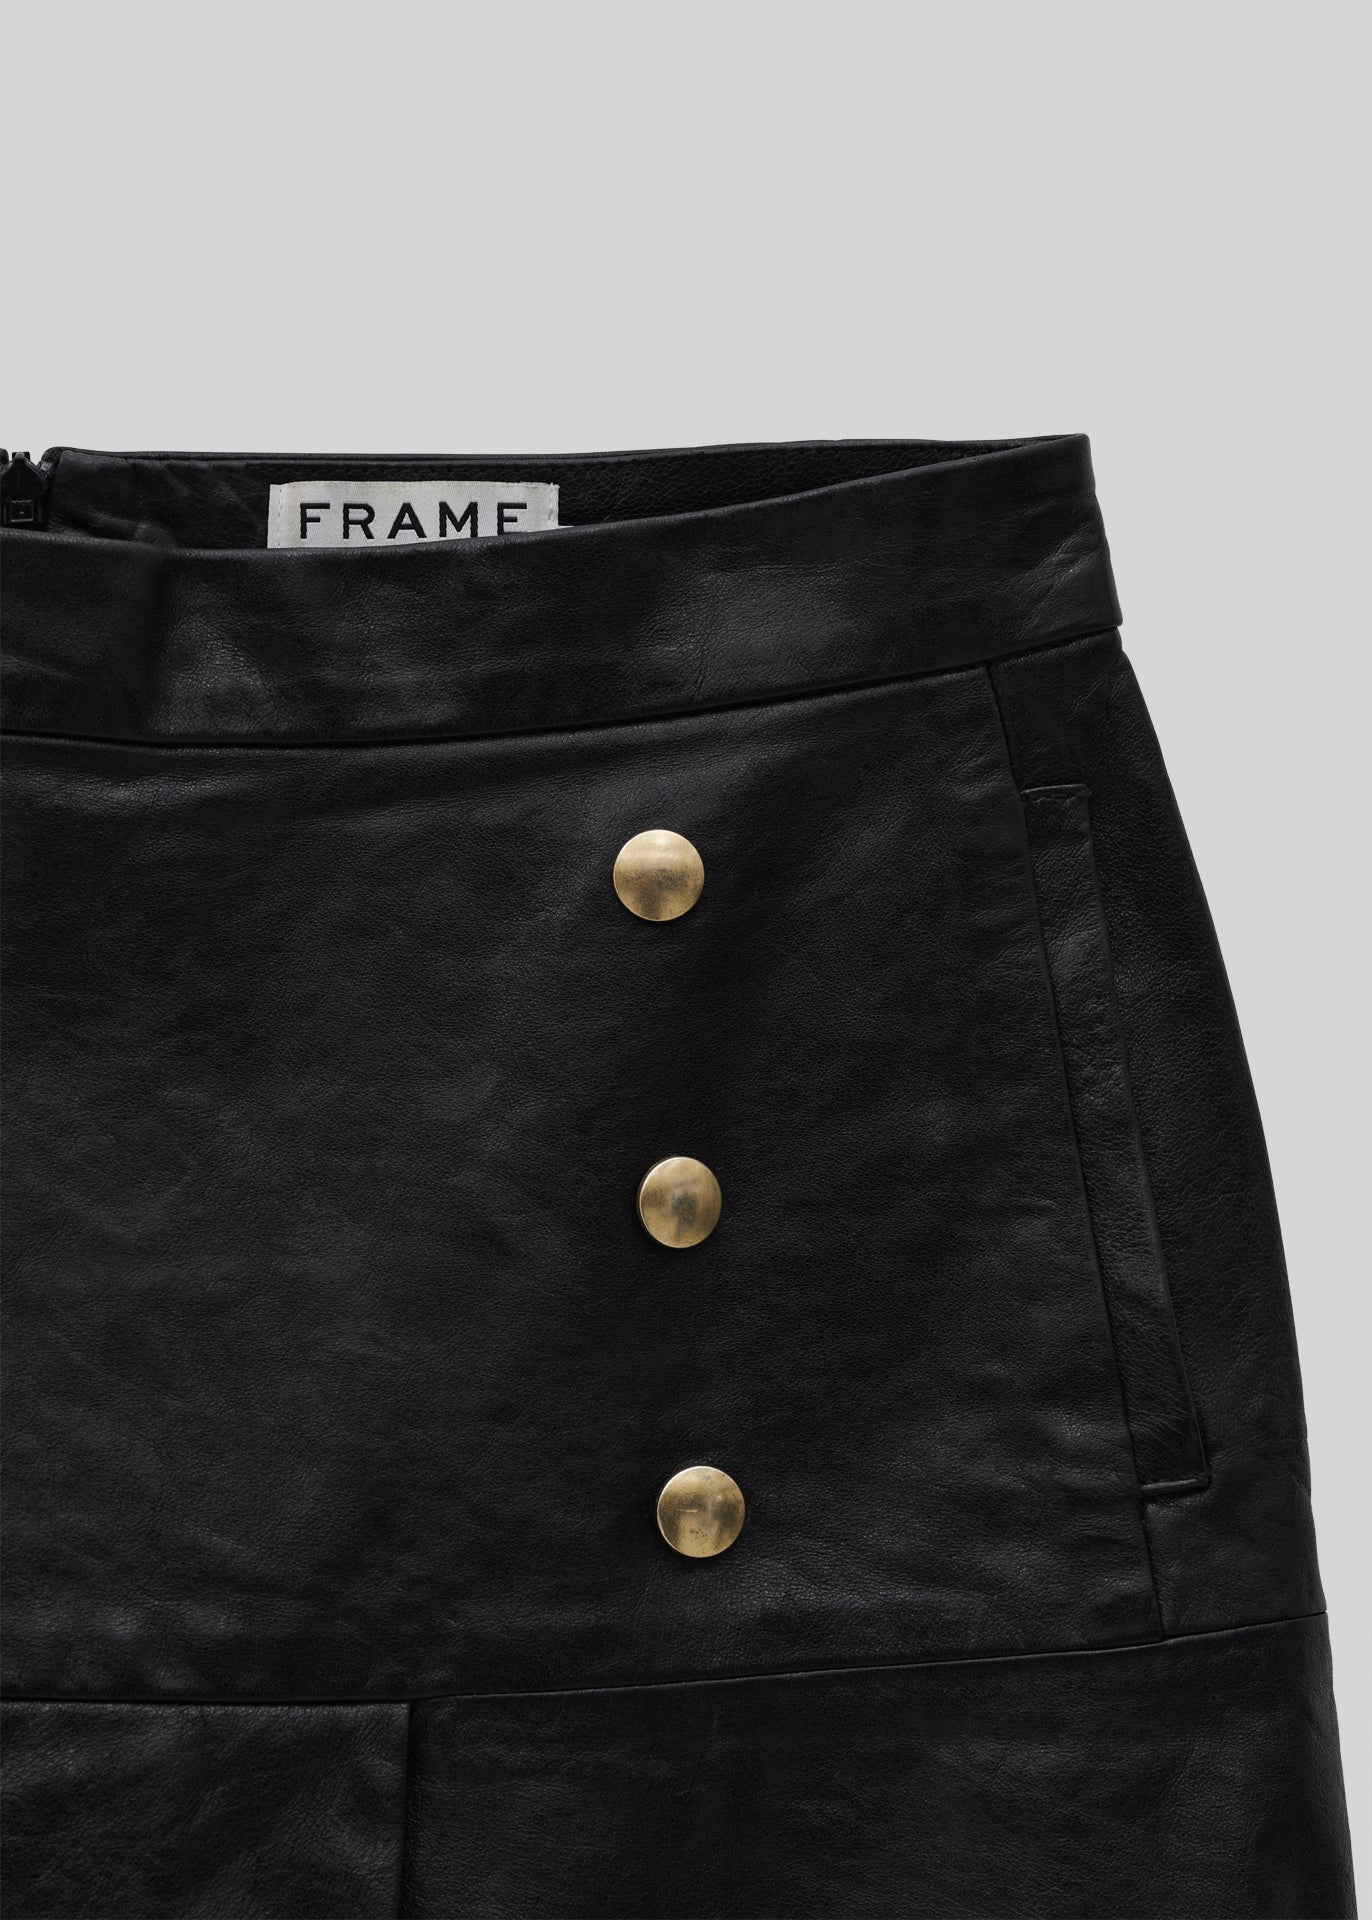 Frame leather skirt - 28